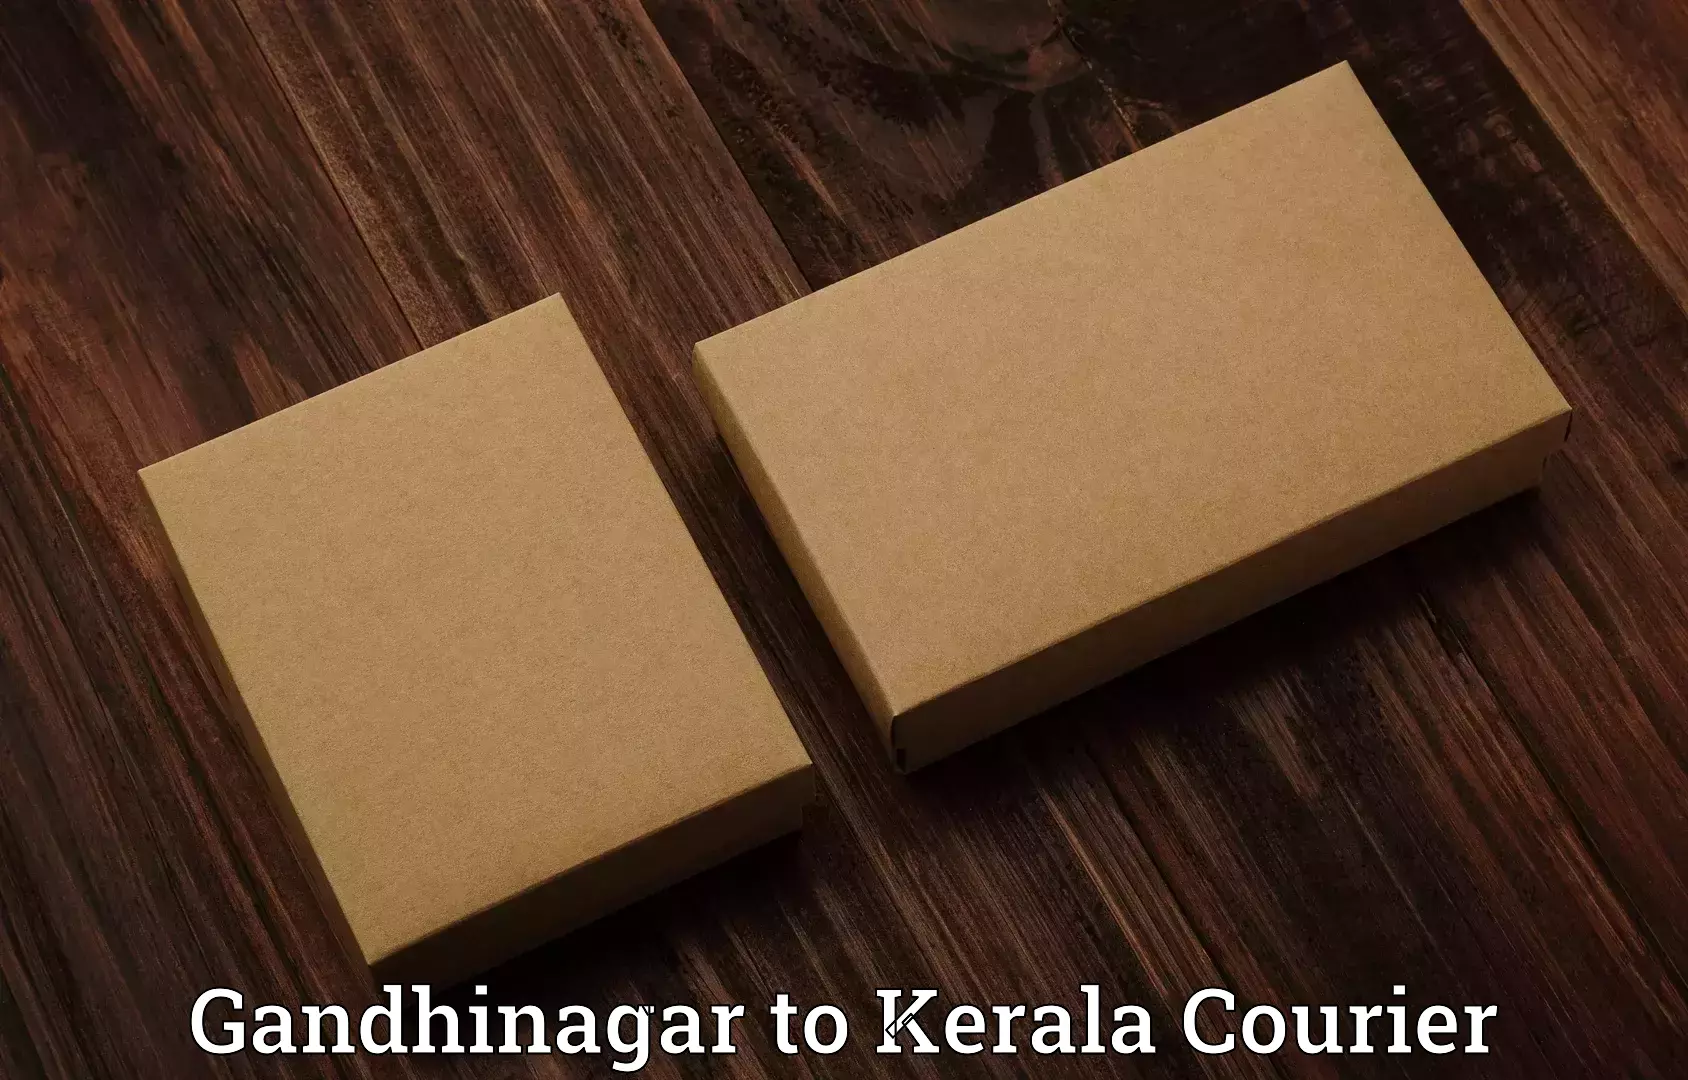 Baggage transport management Gandhinagar to Kerala